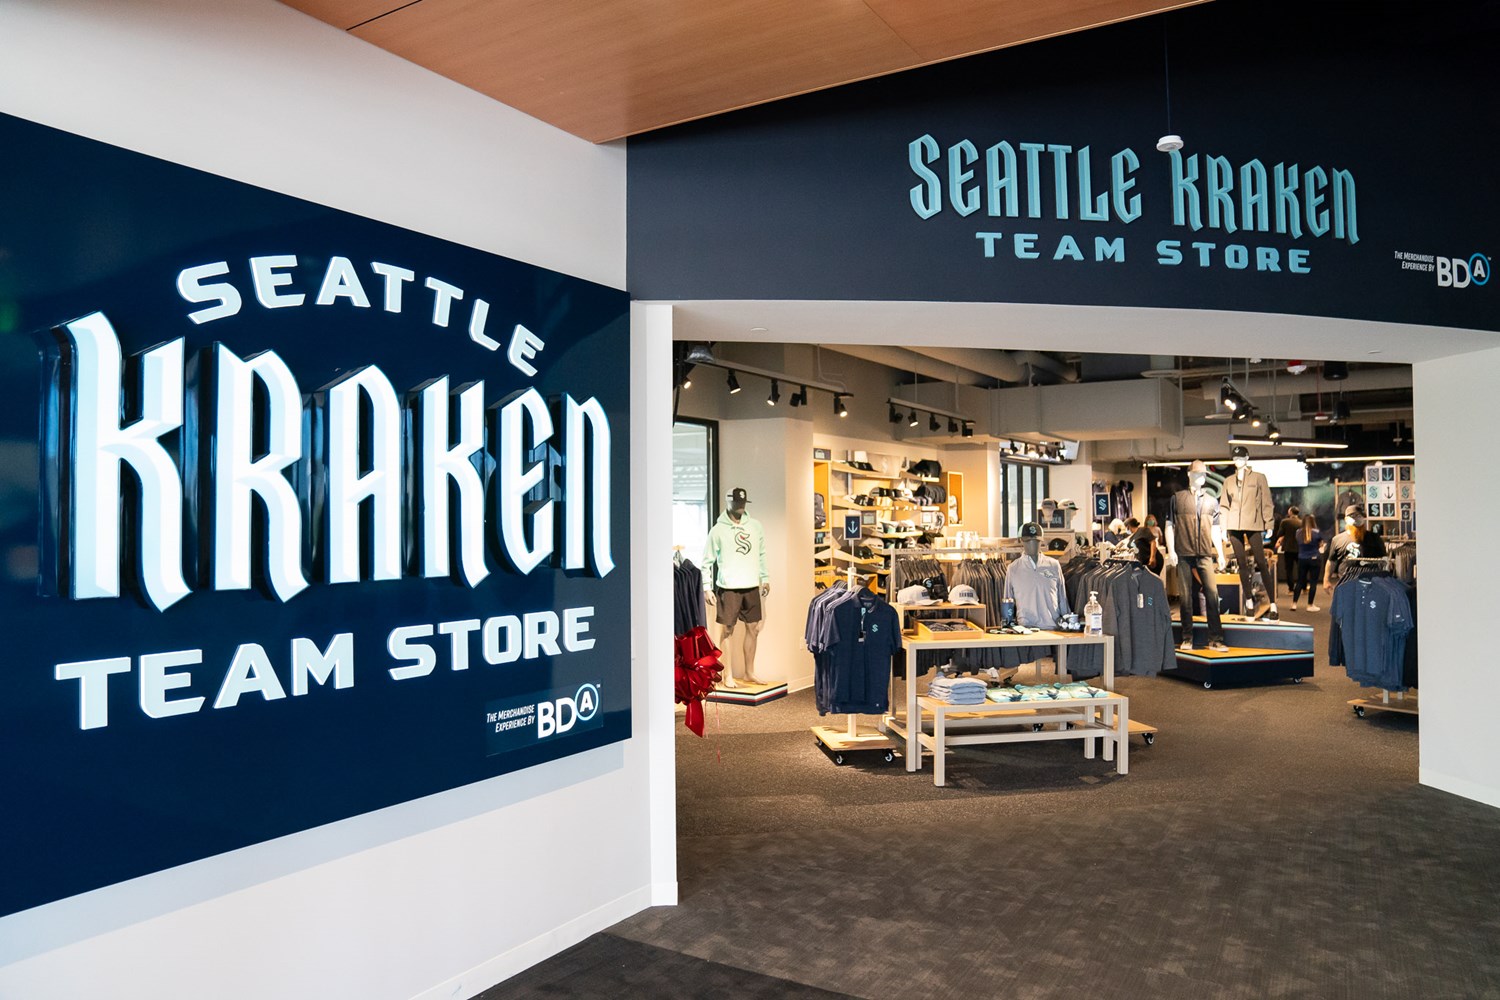 Shop The Kraken for the Best Seattle Kraken Merchandise